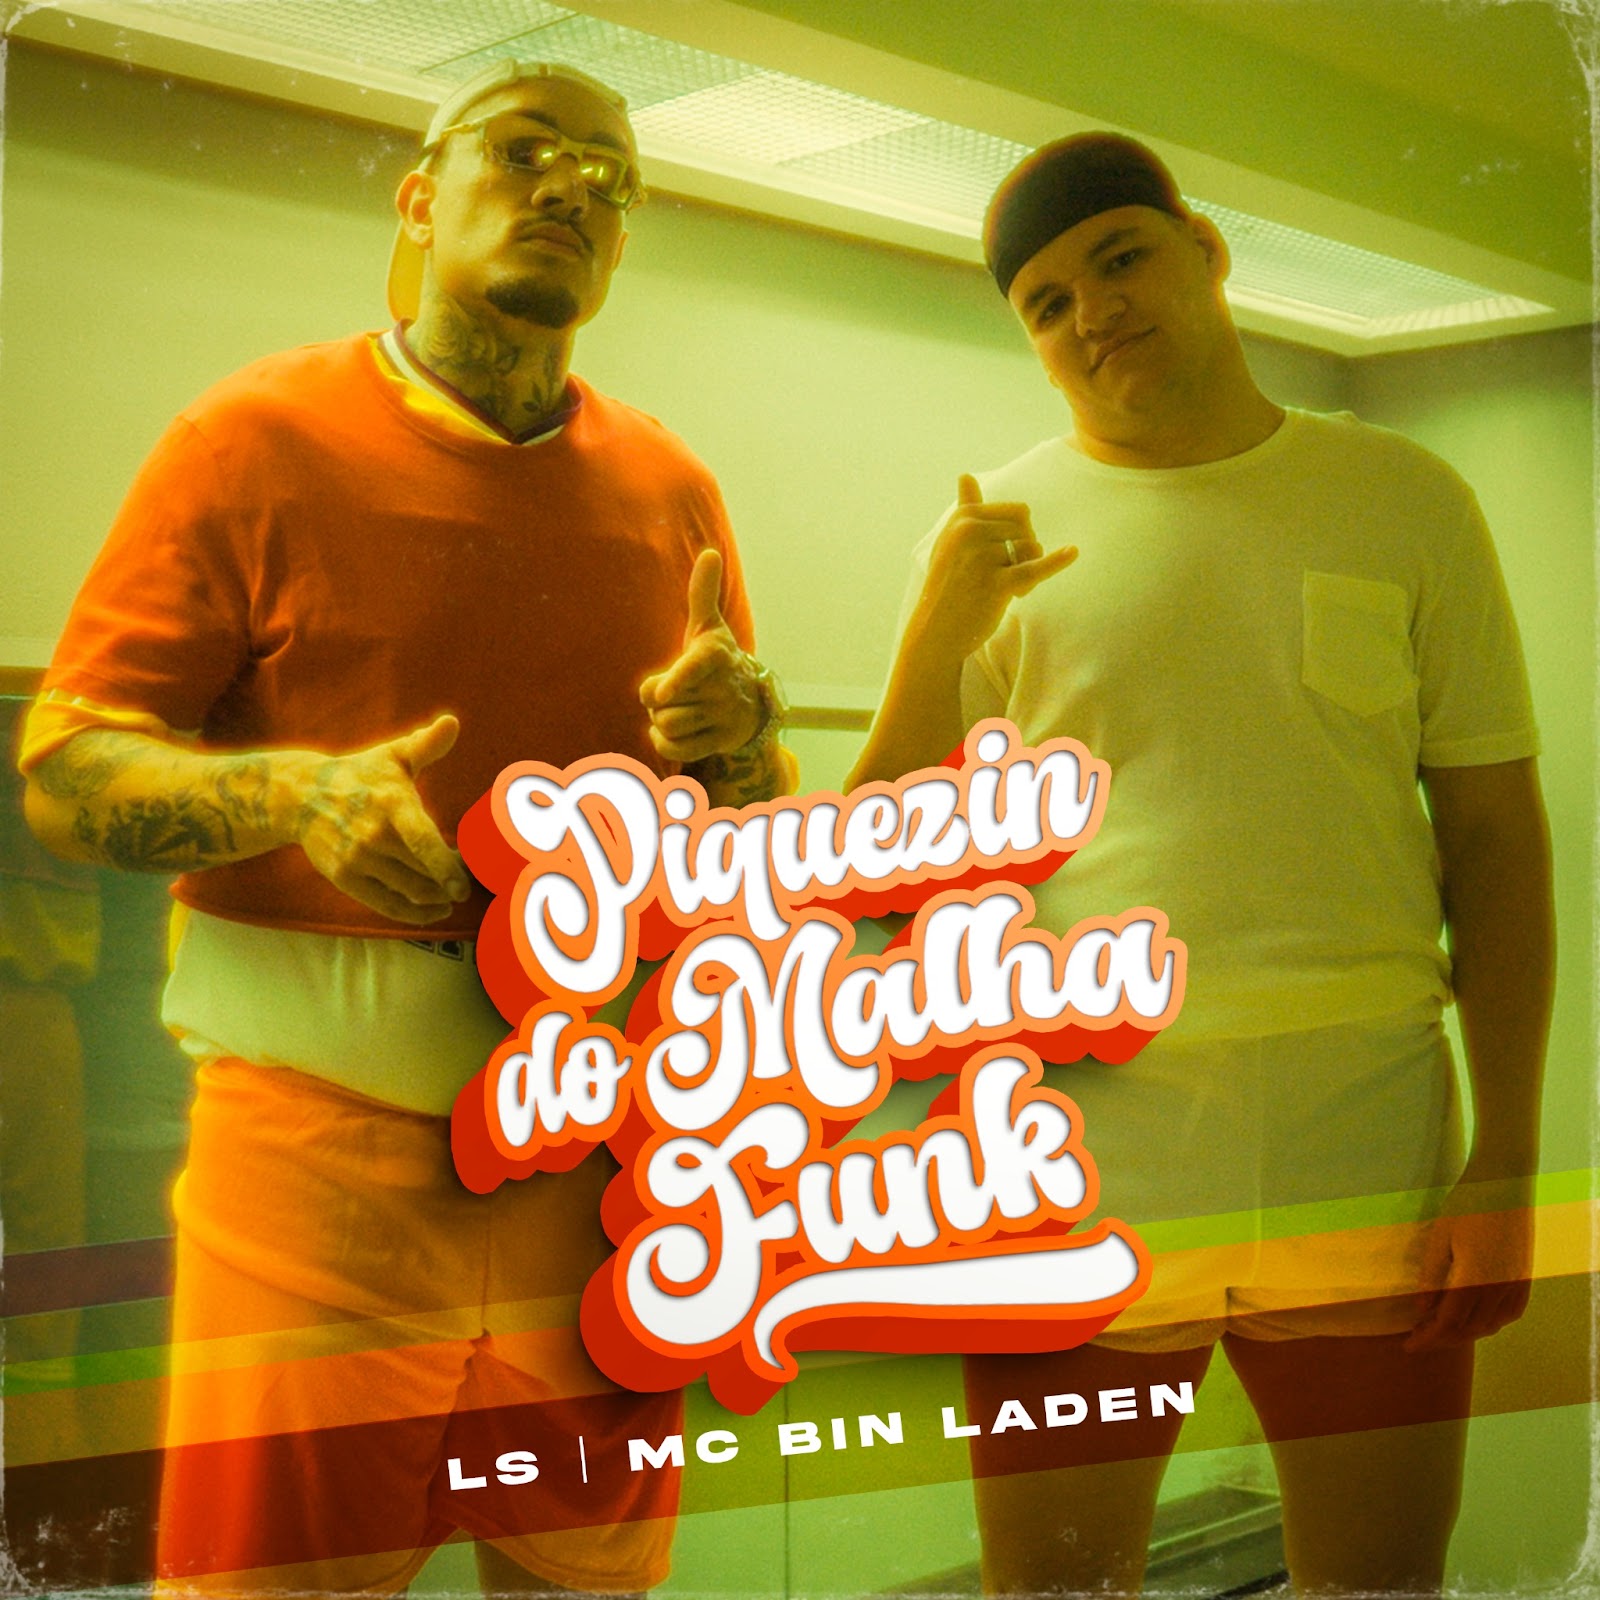 LS e MC Bin Laden buscam inspiracao em classico do funk carioca em nova faixa 22Piquezin do Malha Funk22 POP CYBER